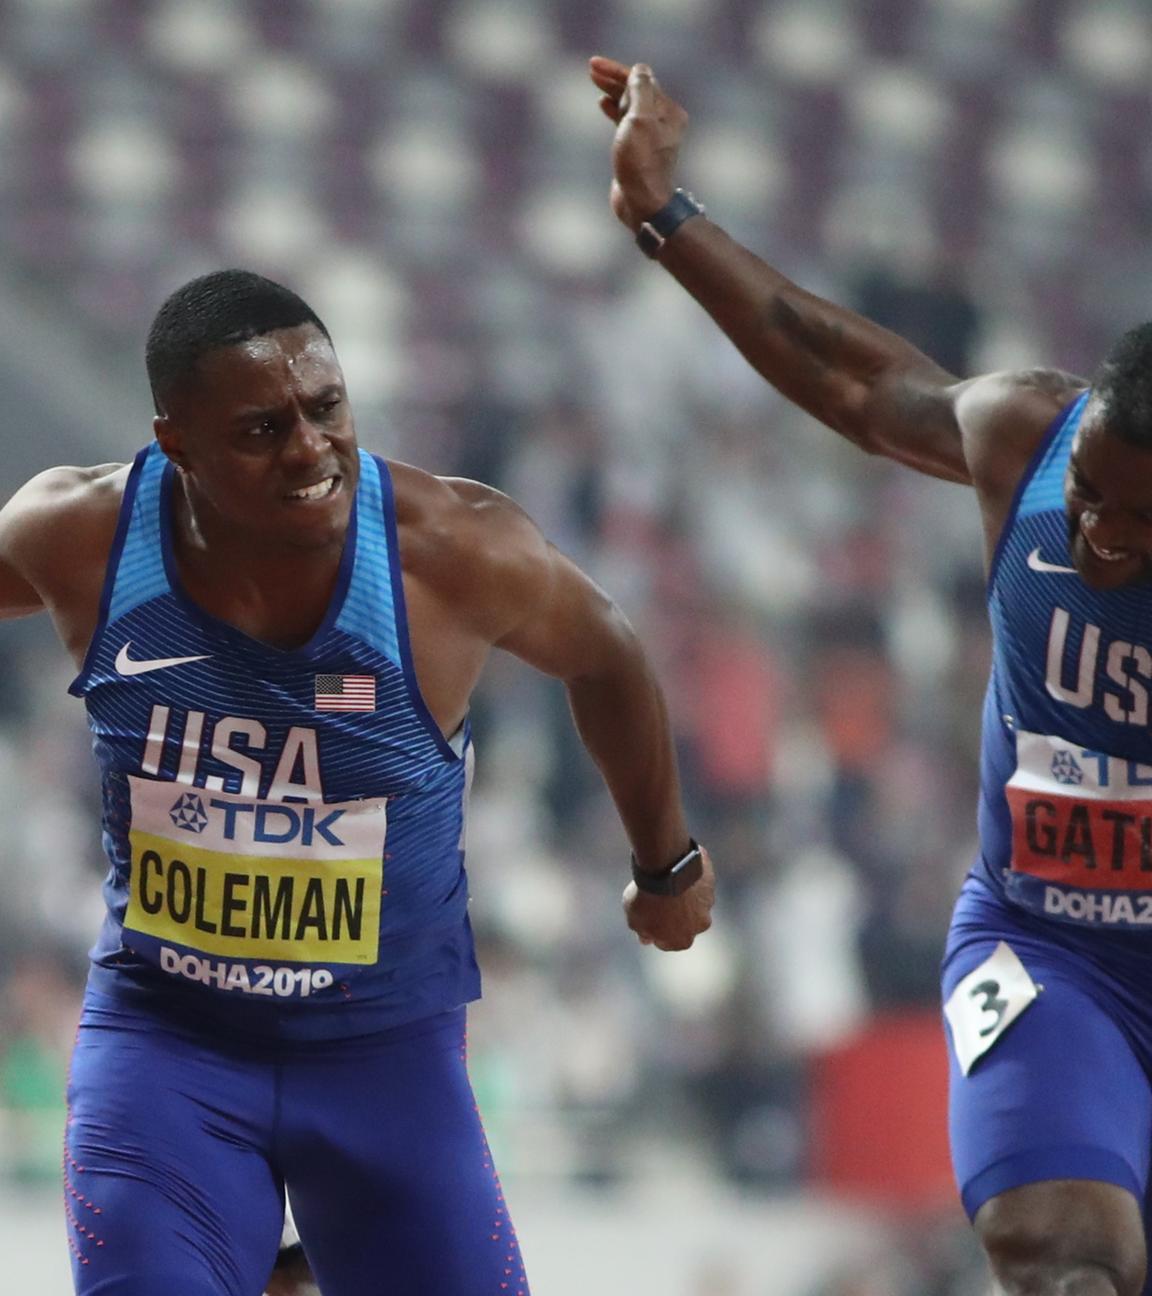 Topfavorit Christian Coleman gewinnt WM-Gold über 100m